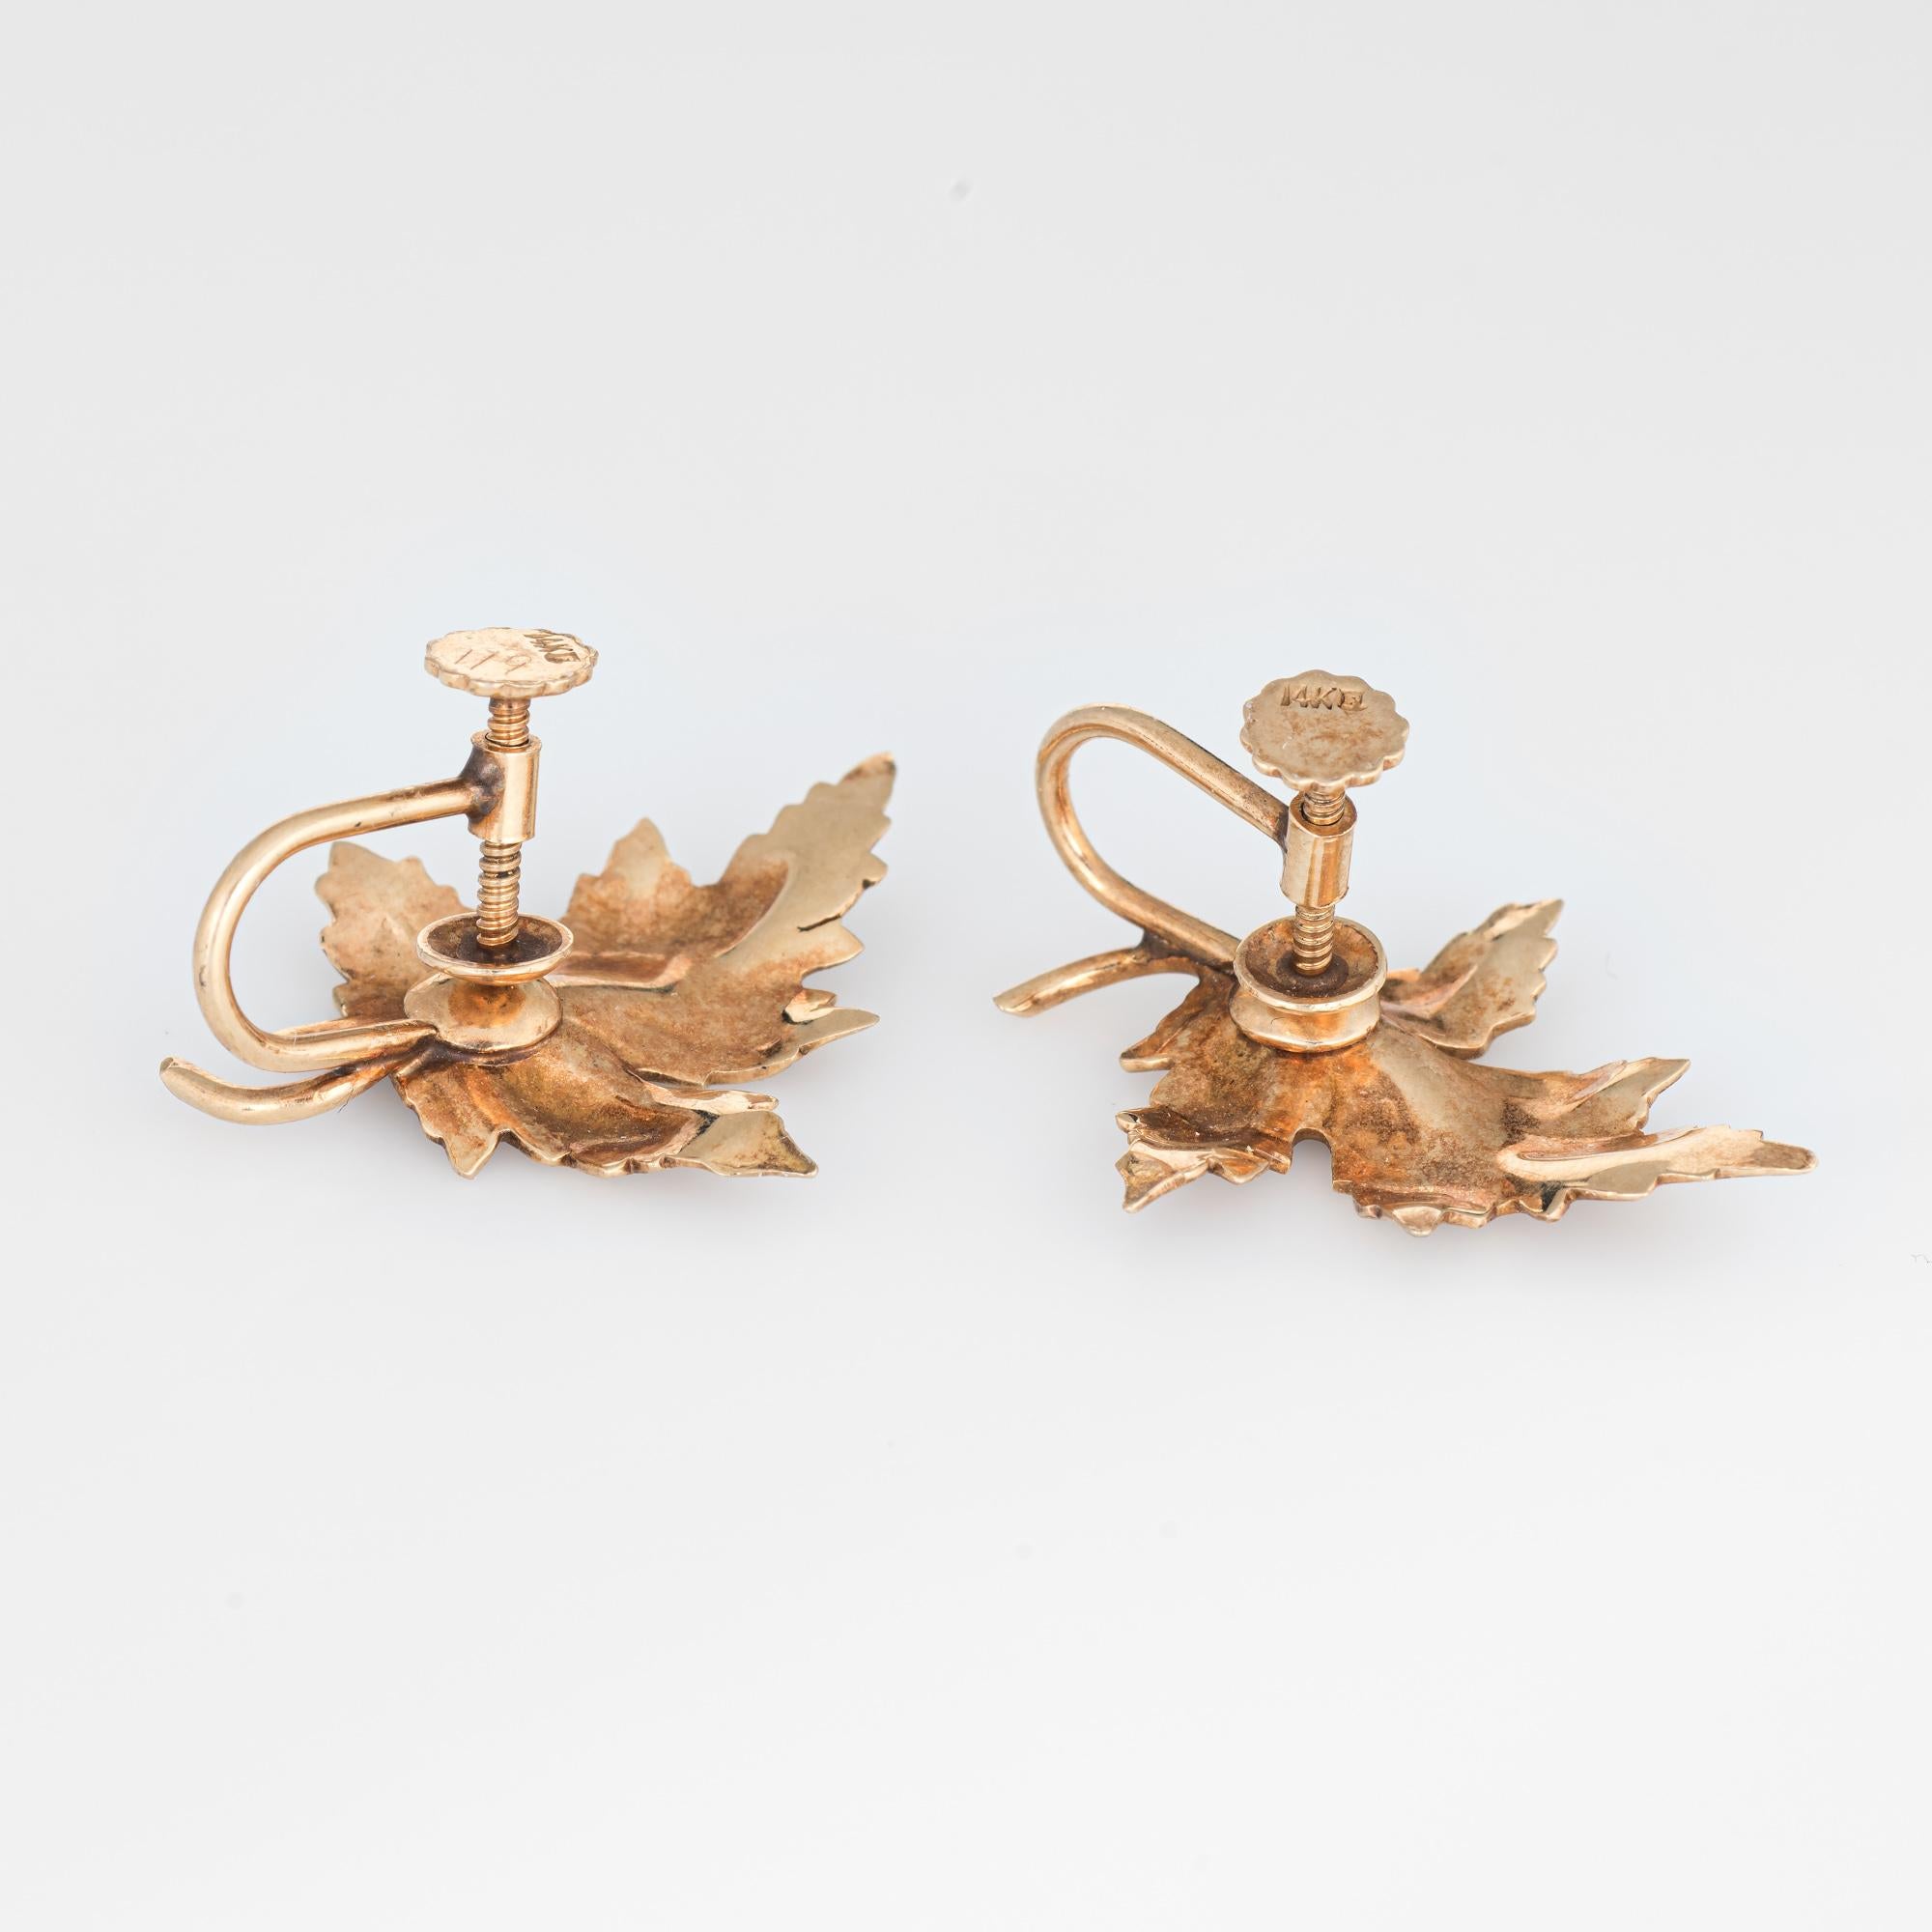 Stilvolles Paar Ahornblatt-Ohrringe im Vintage-Stil (ca. 1950er bis 1960er Jahre) aus 14-karätigem Gelbgold. 

Die bezaubernden Ahornblatt-Ohrringe sind mit naturgetreuen Details wie Adern in den Blättern und einem strukturierten, gedämpften